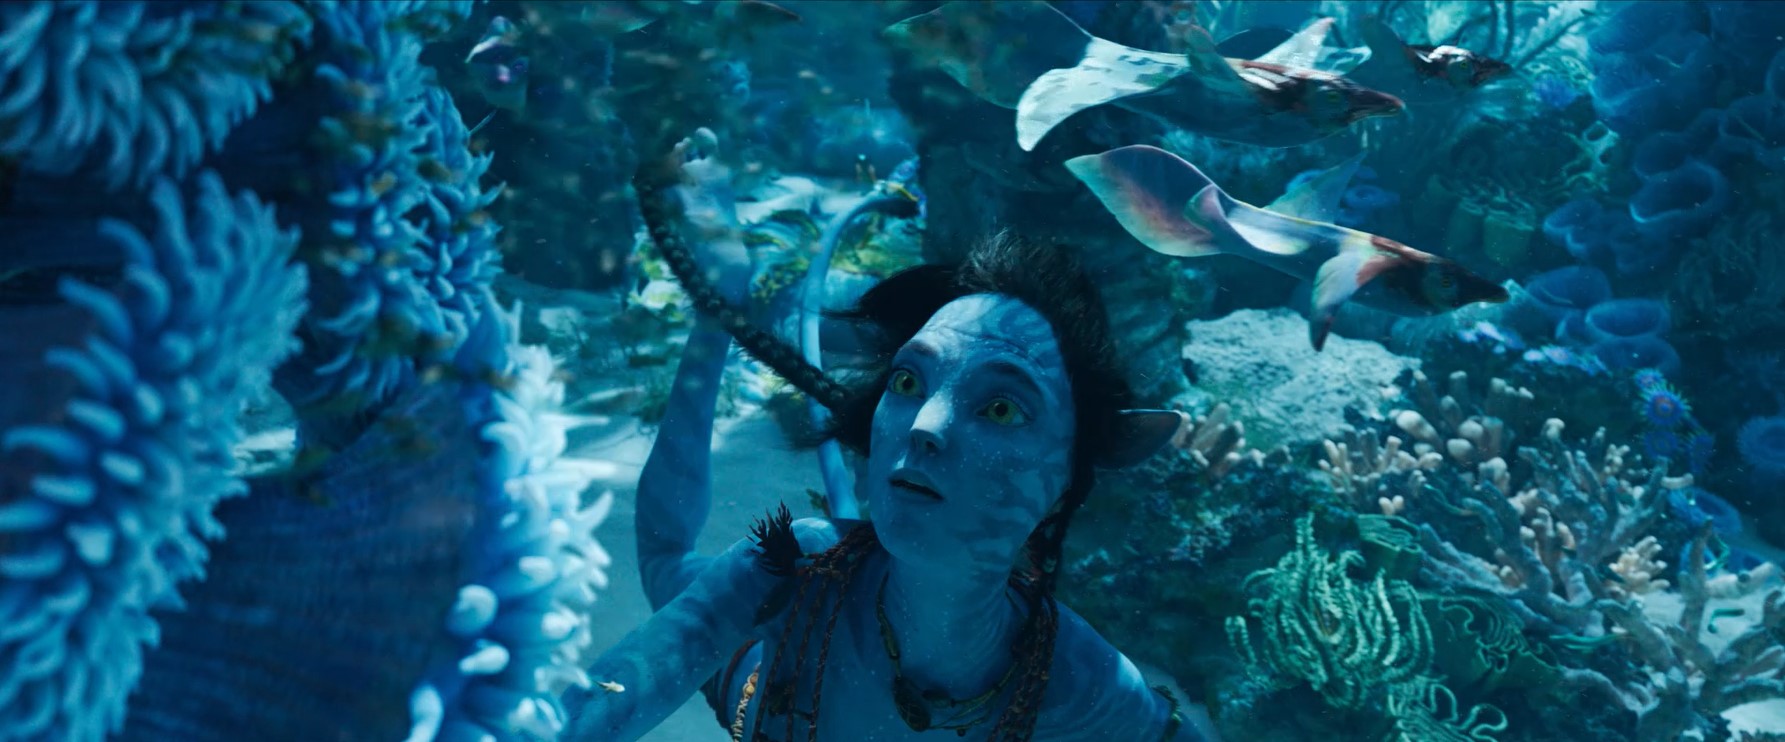 Trailer đầu tiên của Avatar 2 có gần 150 triệu lượt xem chỉ sau ngày đầu  tiên